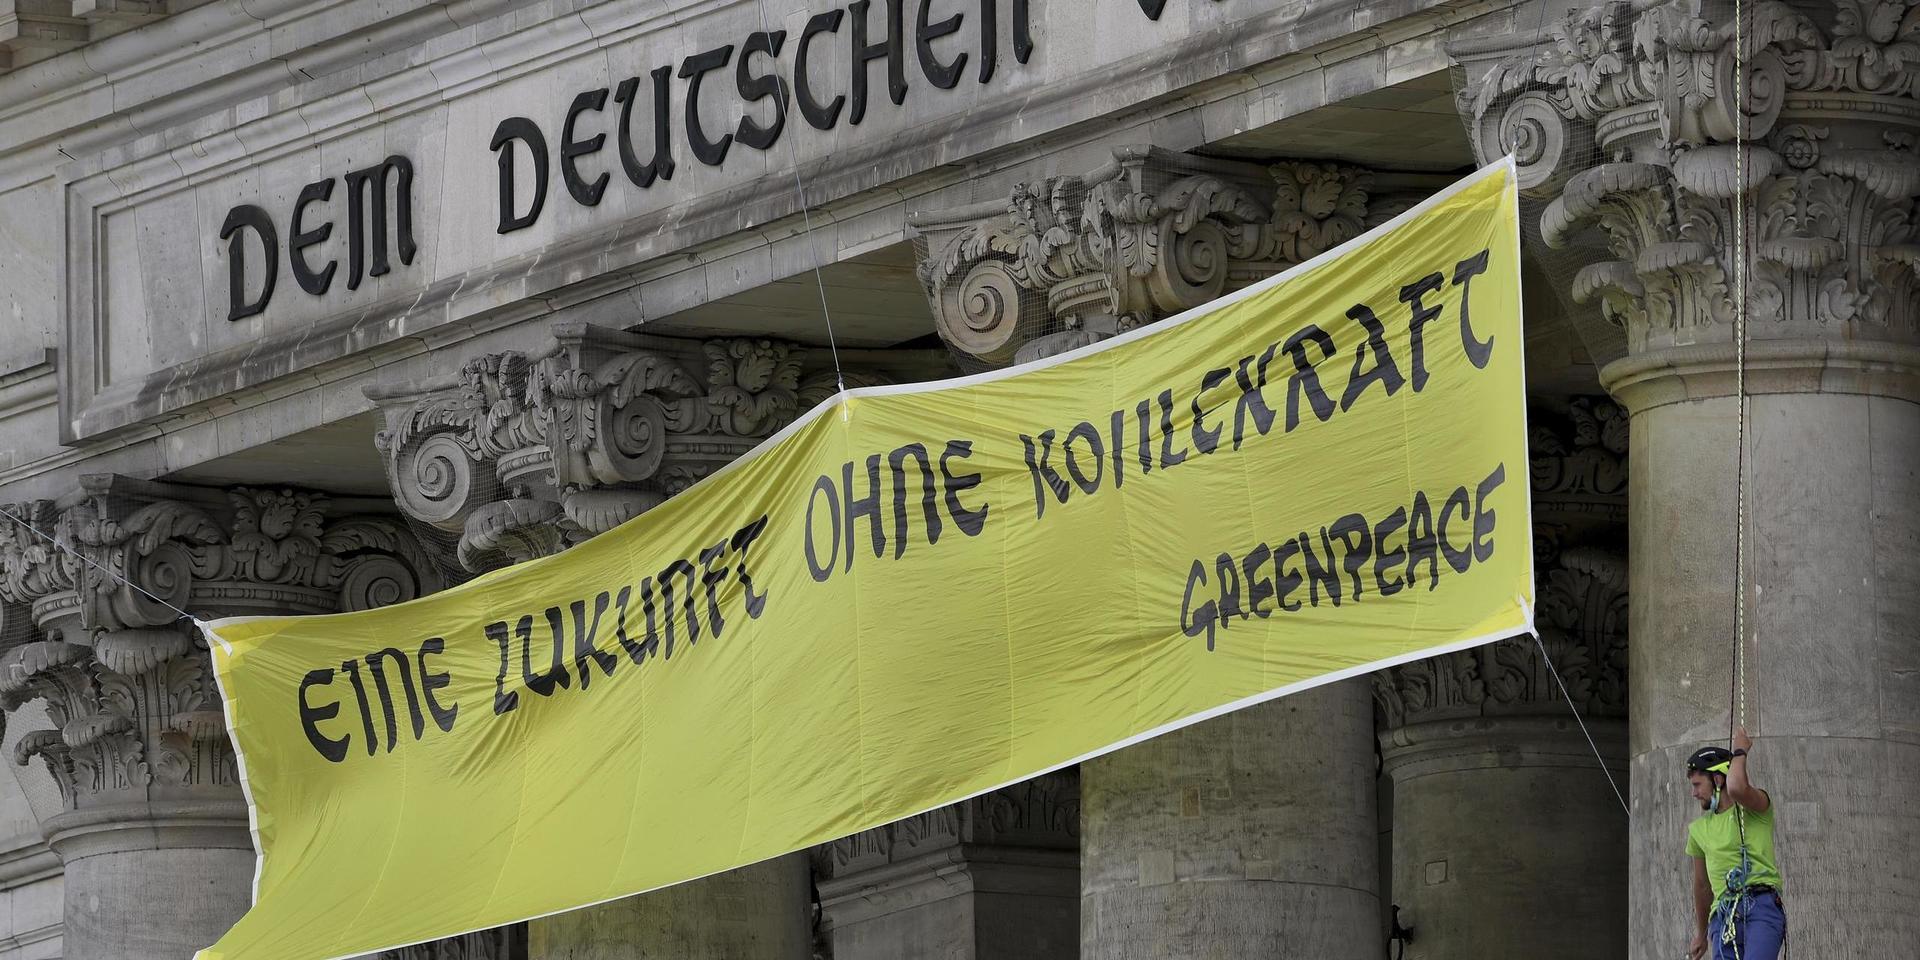 Miljöaktivister från Greenpeace förlängde på fredagen det tyska mottot 'Dem deutschen Volke' i Berlin med sin slogan 'Eine Zukunft ohne Kohlekraft' – vilket sammantaget kan översättas, 'En framtid utan kolenergi för det tyska folket'.